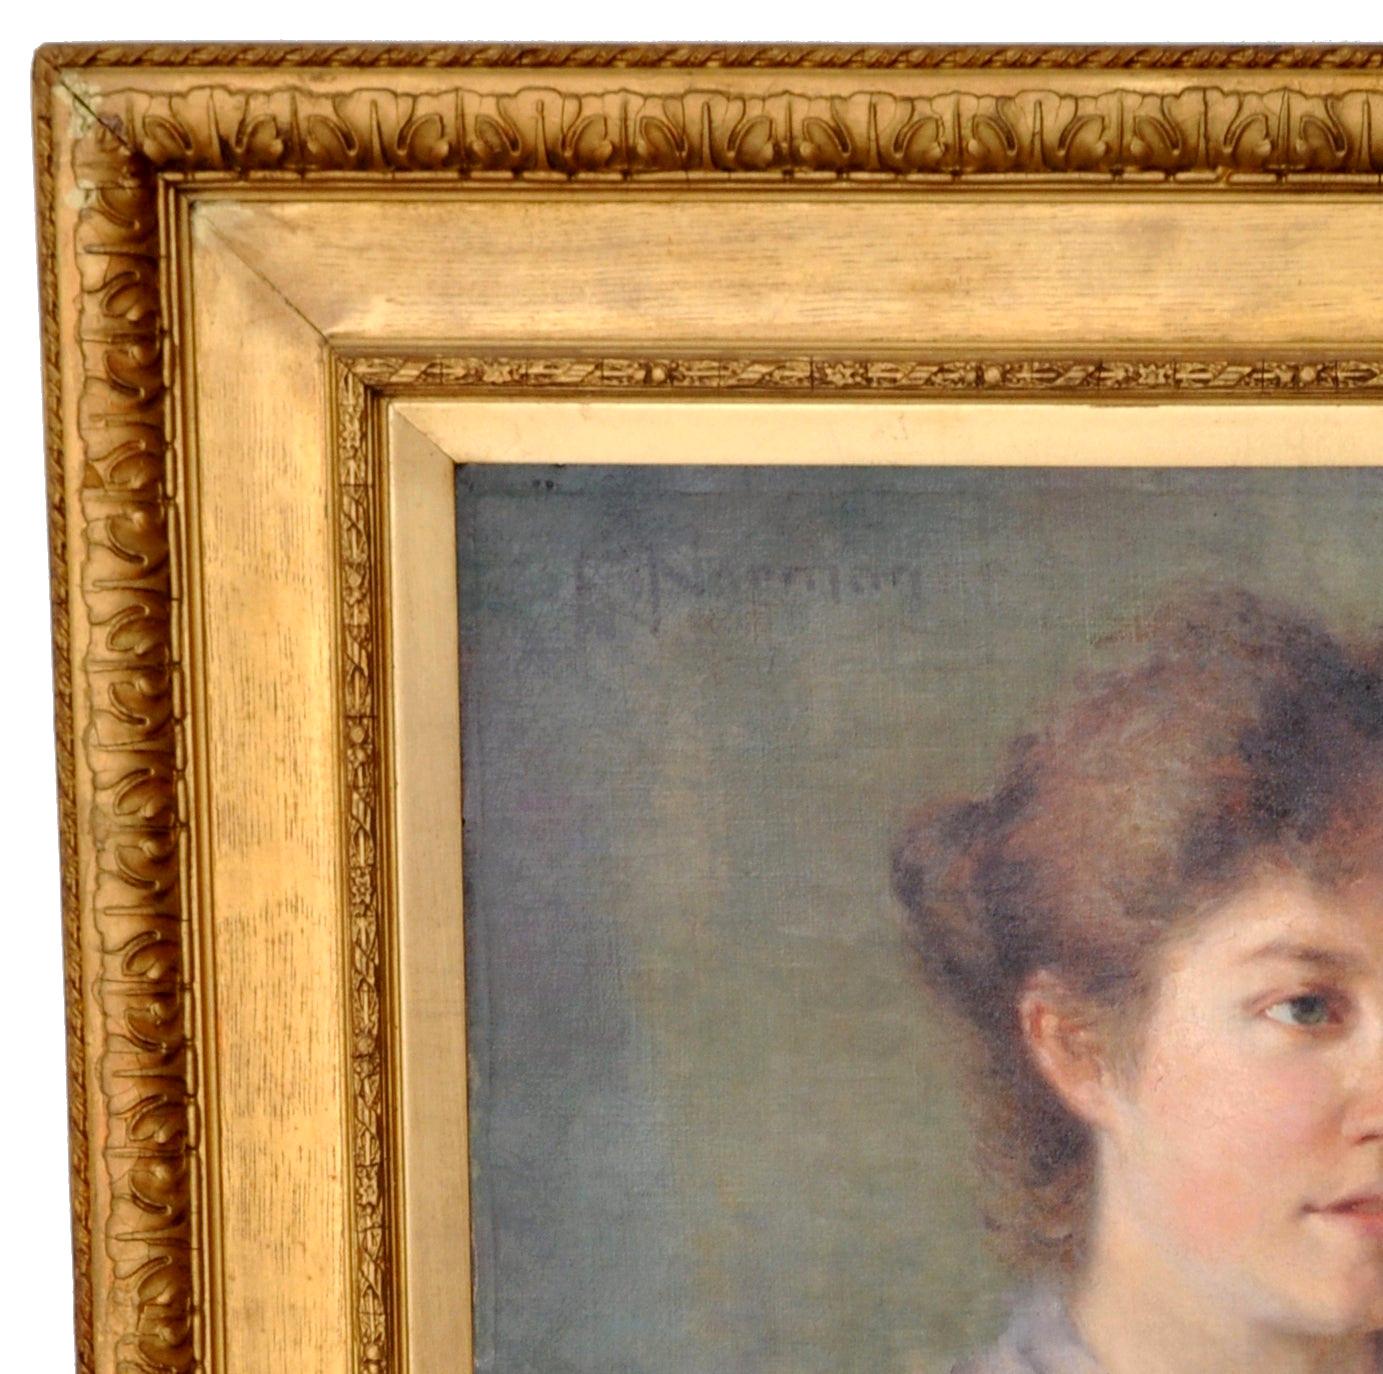 Antique peinture anglaise de portrait à l'huile sur toile, vers 1900. Un très beau portrait impressionniste d'une jeune femme en robe édouardienne. Huile sur toile, signée en haut à gauche 